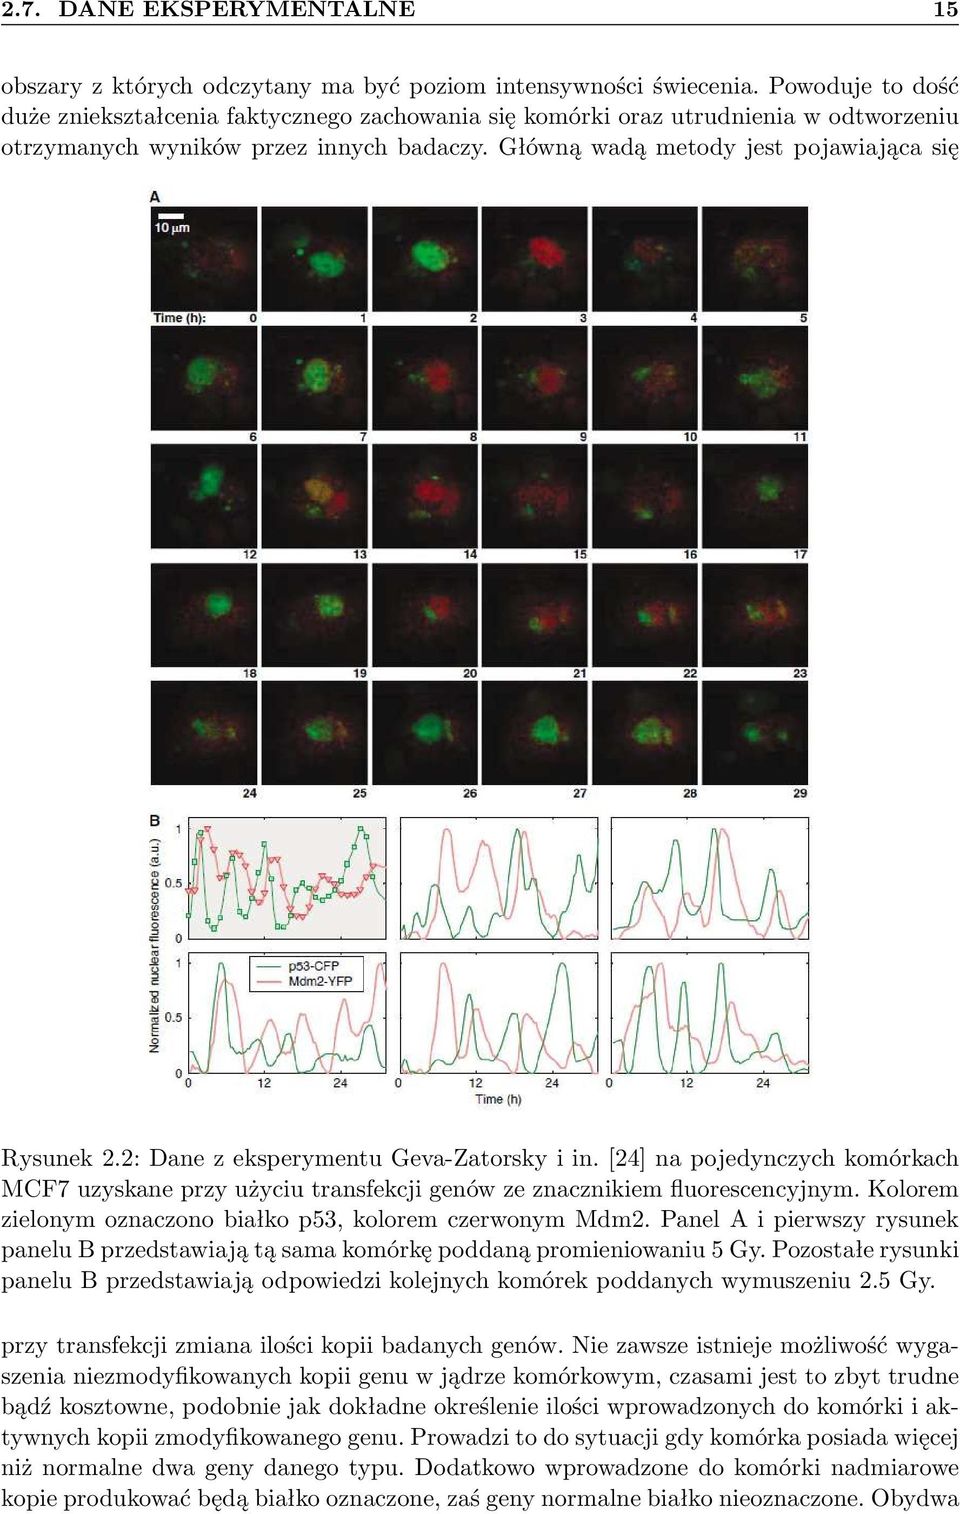 2: Dane z eksperymentu Geva-Zatorsky i in. [24] na pojeynczych komórkach MCF7 uzyskane przy użyciu transfekcji genów ze znacznikiem fluorescencyjnym.